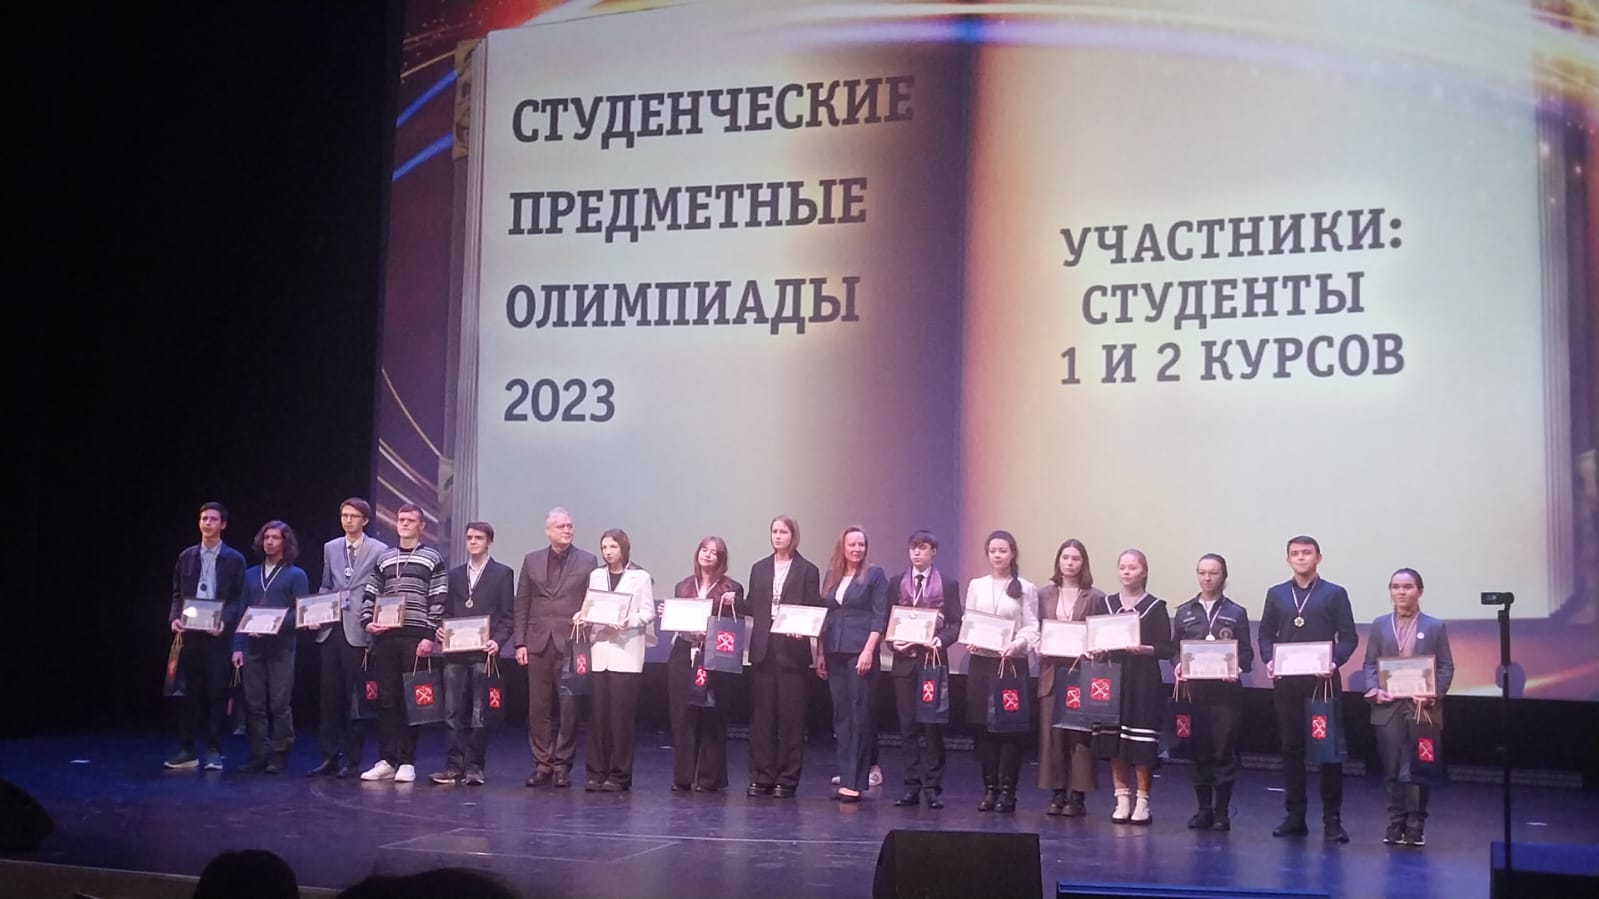 30 ноября прошла церемония награждения победителей Санкт-Петербургского этапа Всероссийской олимпиады профессионального мастерства в системе СПО 2023